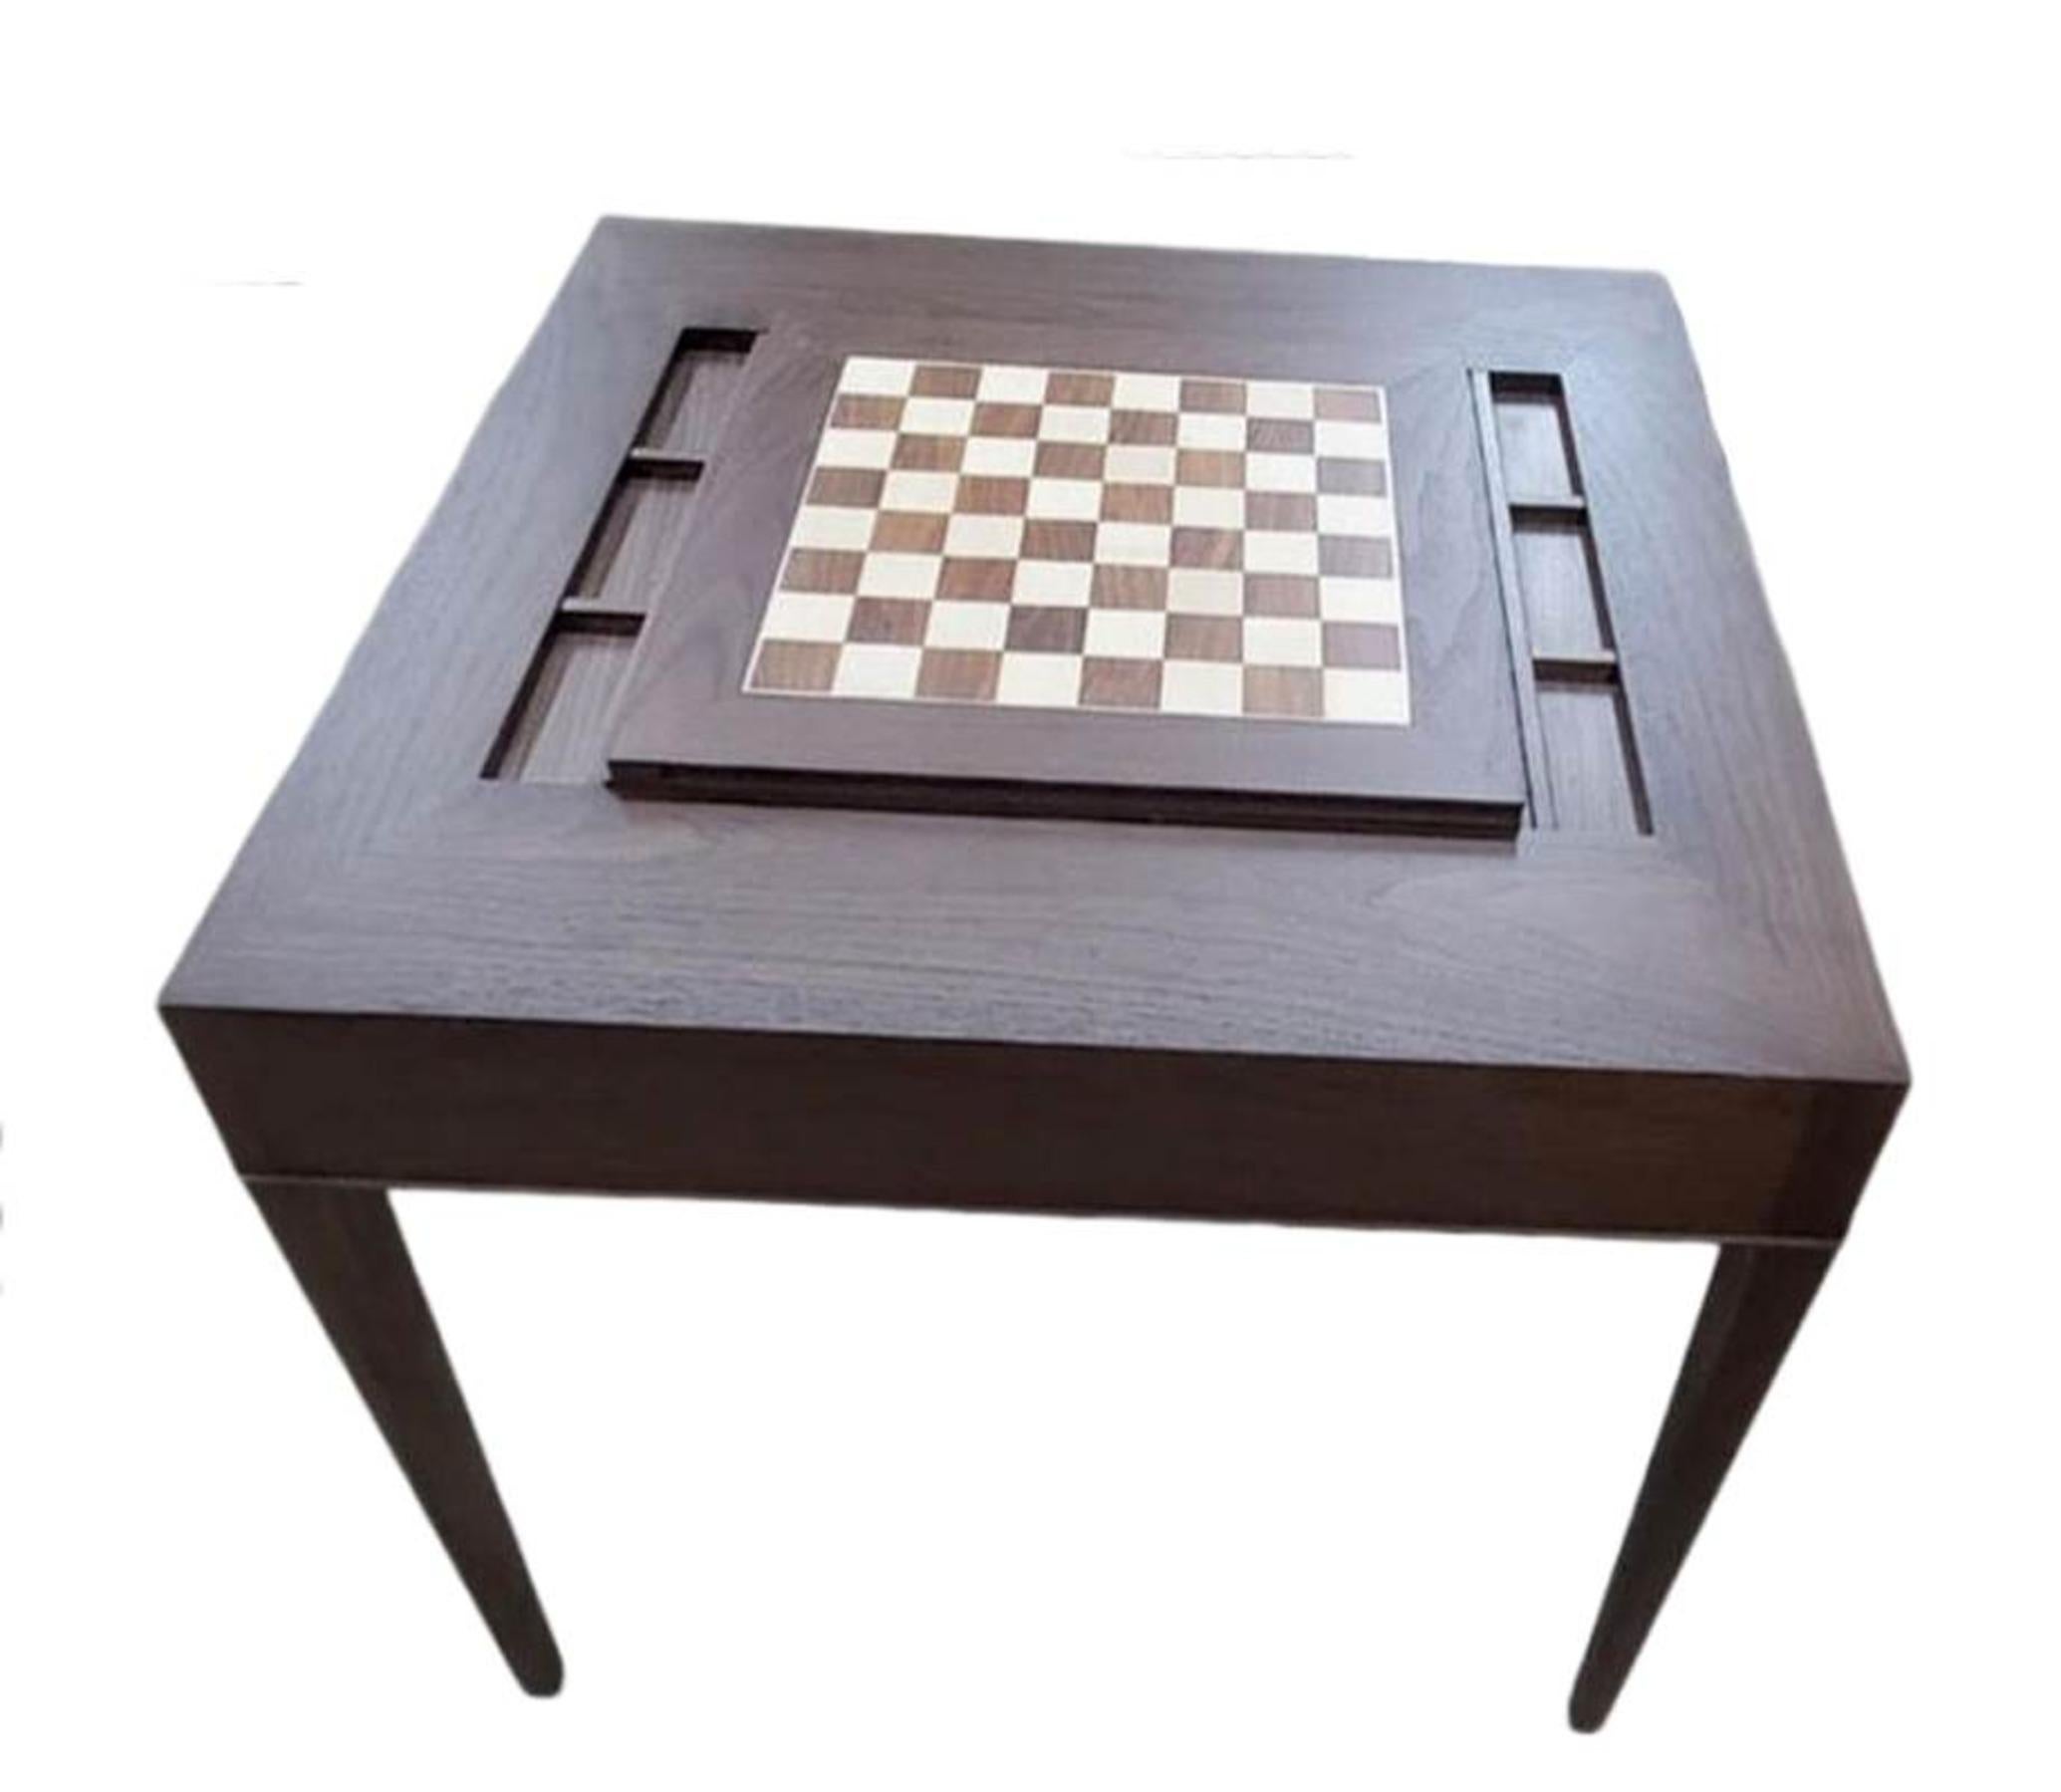 Table sur mesure en noyer ou en acajou avec un plateau amovible qui permet d'exposer le plateau de backgammon. Le couvercle peut être retourné pour exposer l'échiquier. Taille idéale pour jouer aux cartes, au poker, aux jeux de société, etc. La